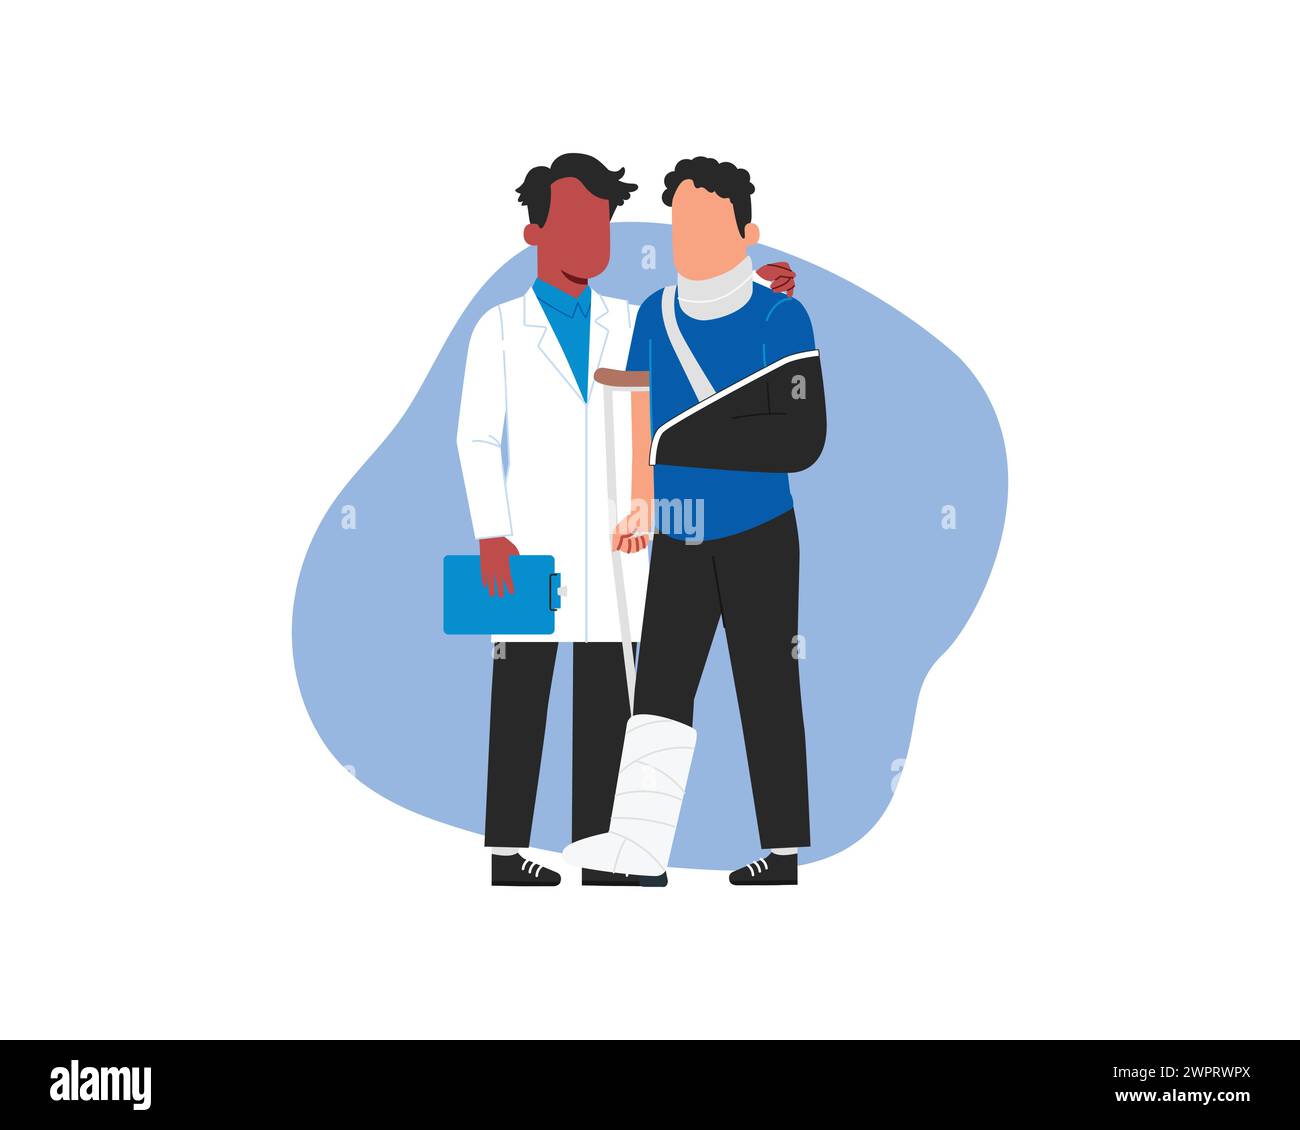 Une personne médicale en blanc aide un homme blessé avec le bras cassé. Illustration vectorielle dans un style plat. Illustration de Vecteur